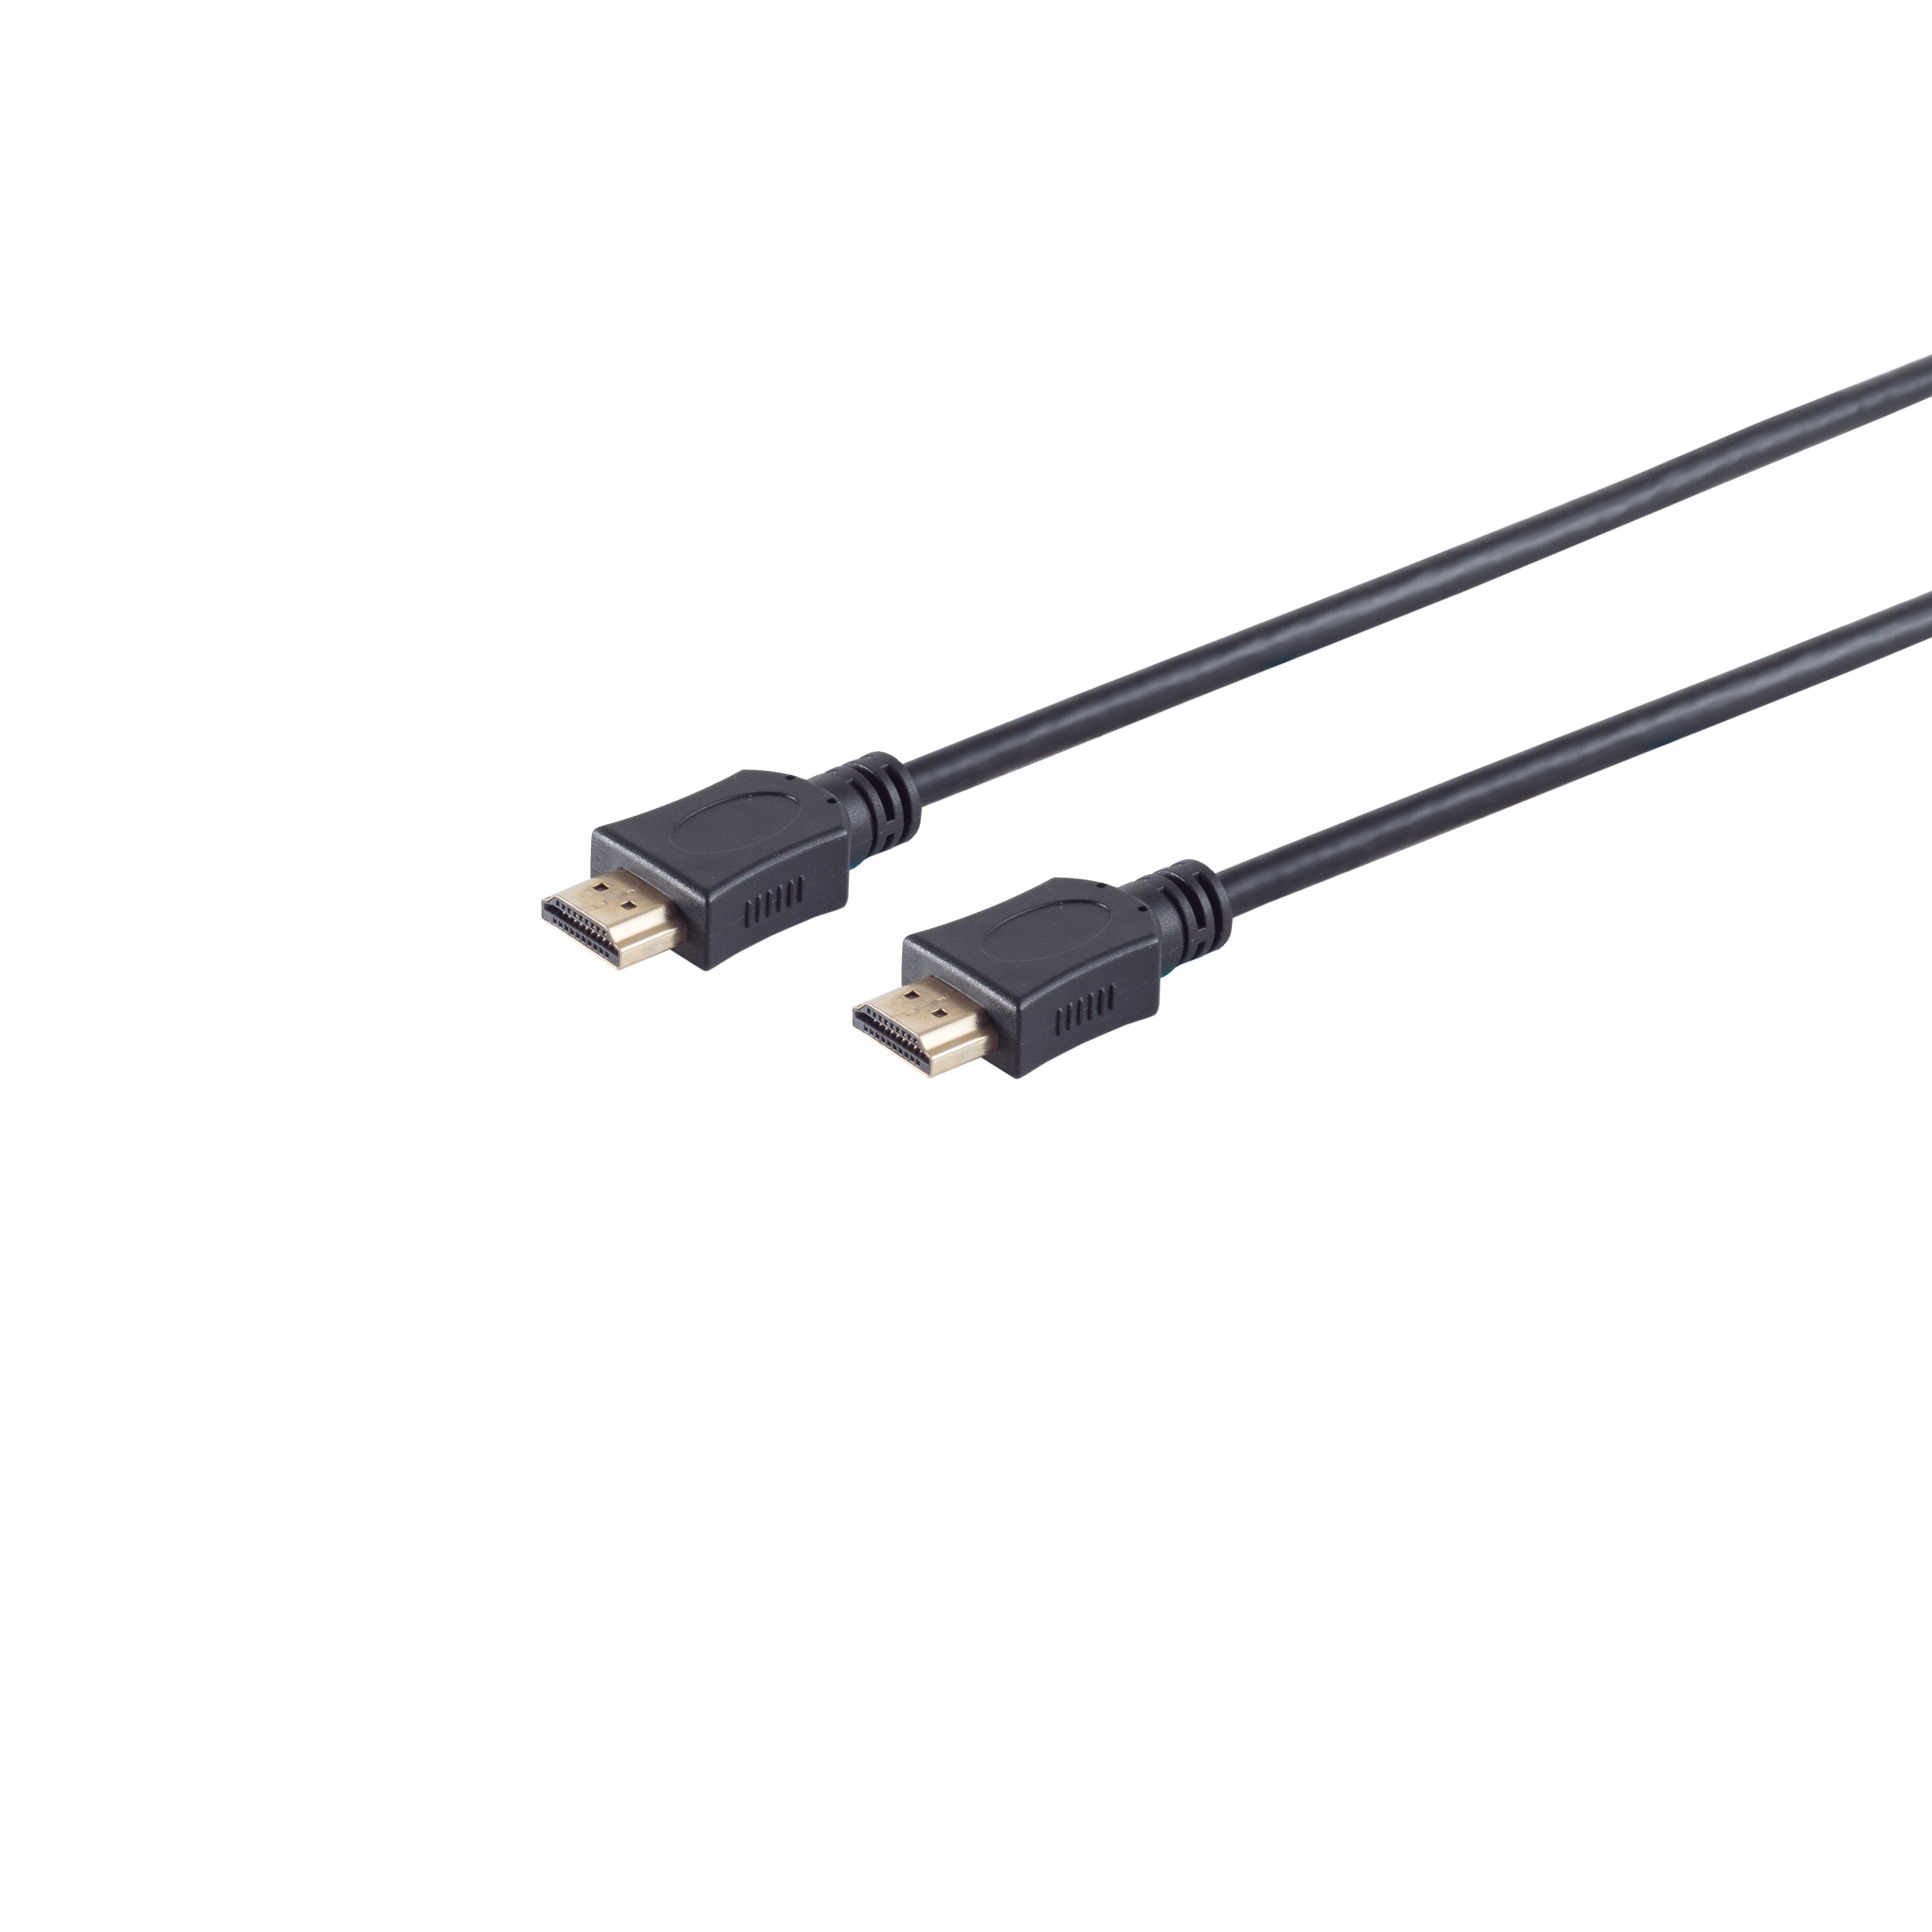 HDMI HEAC HDMI CONNECTIVITY S/CONN verg. A-Stecker HDMI 3m / Kabel MAXIMUM A-Stecker